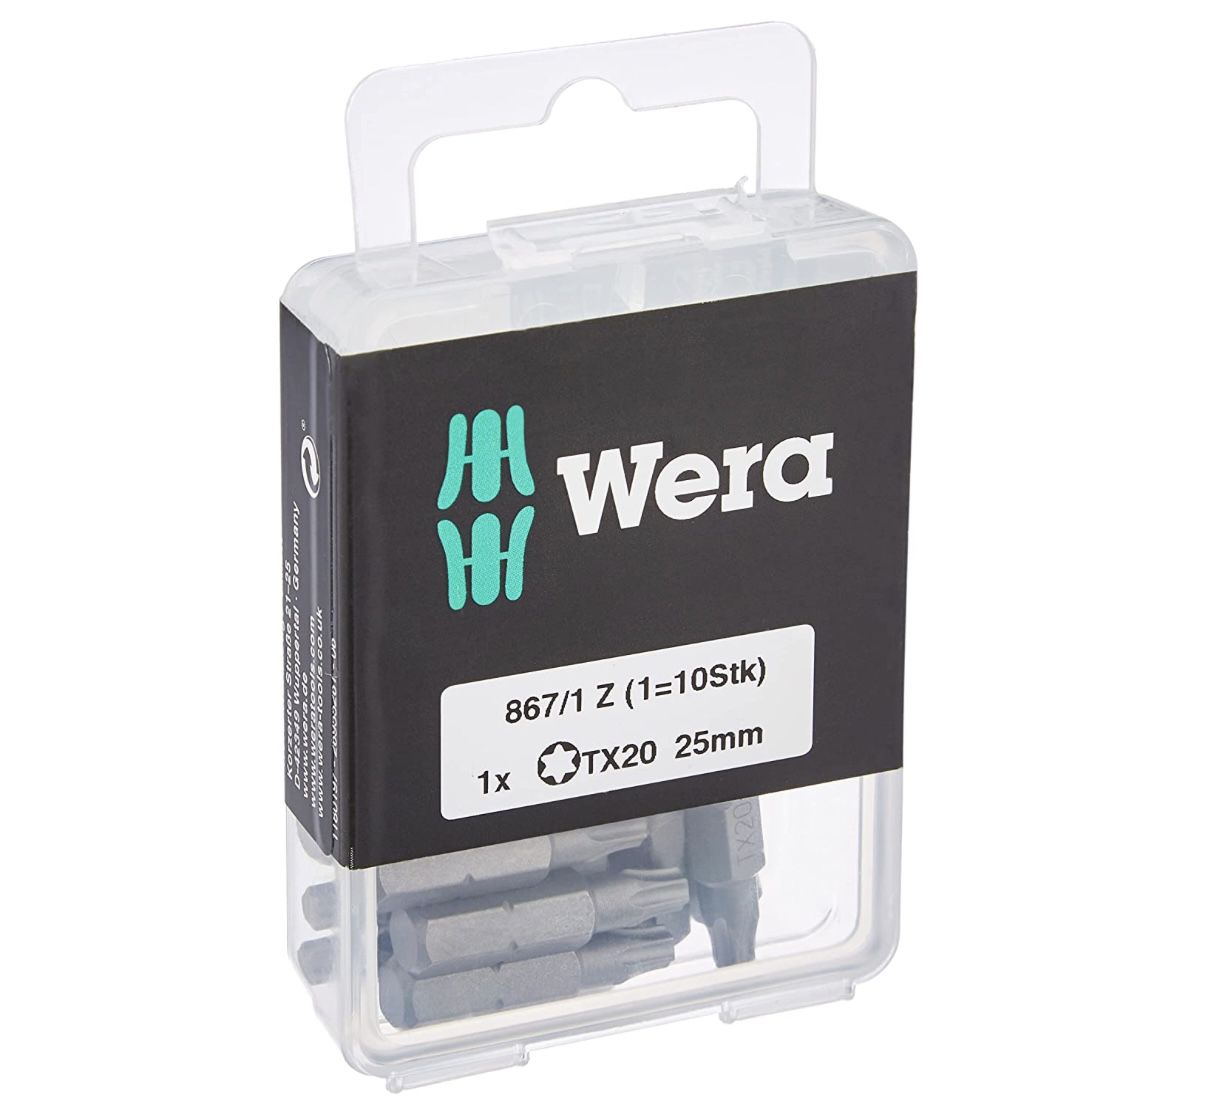 Wera 867/1 Z TX 20 DIY Bit Sortiment für 7,48€ (statt 12€)   Prime